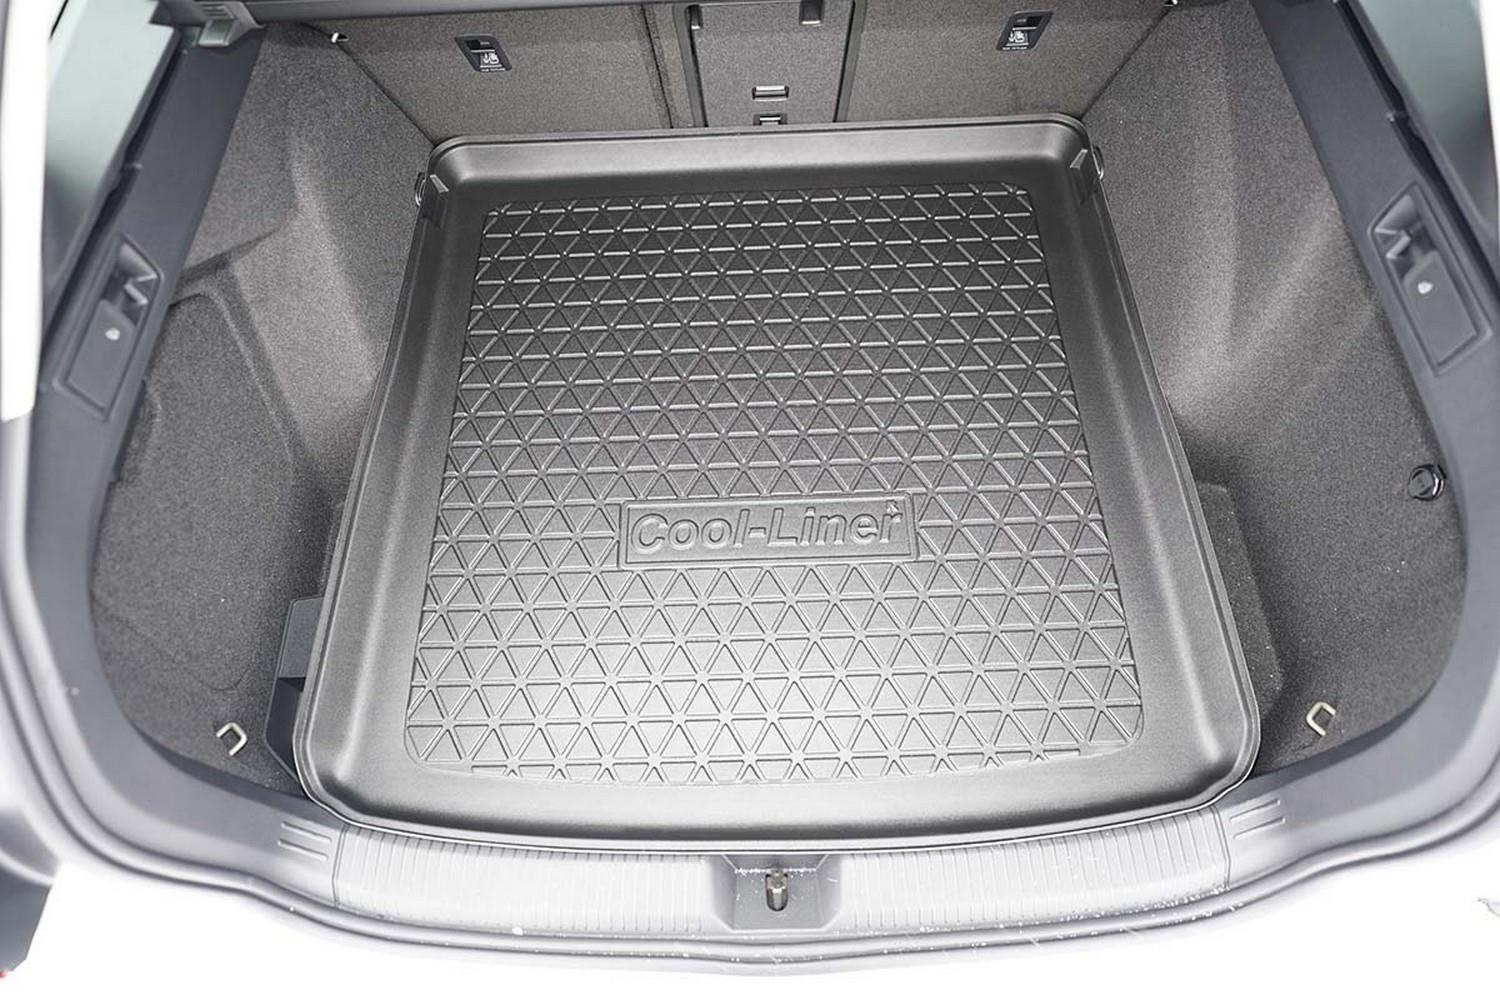 Bac de coffre Kleinmetall Starliner pour VW Touran II Type: 5T (gris) –